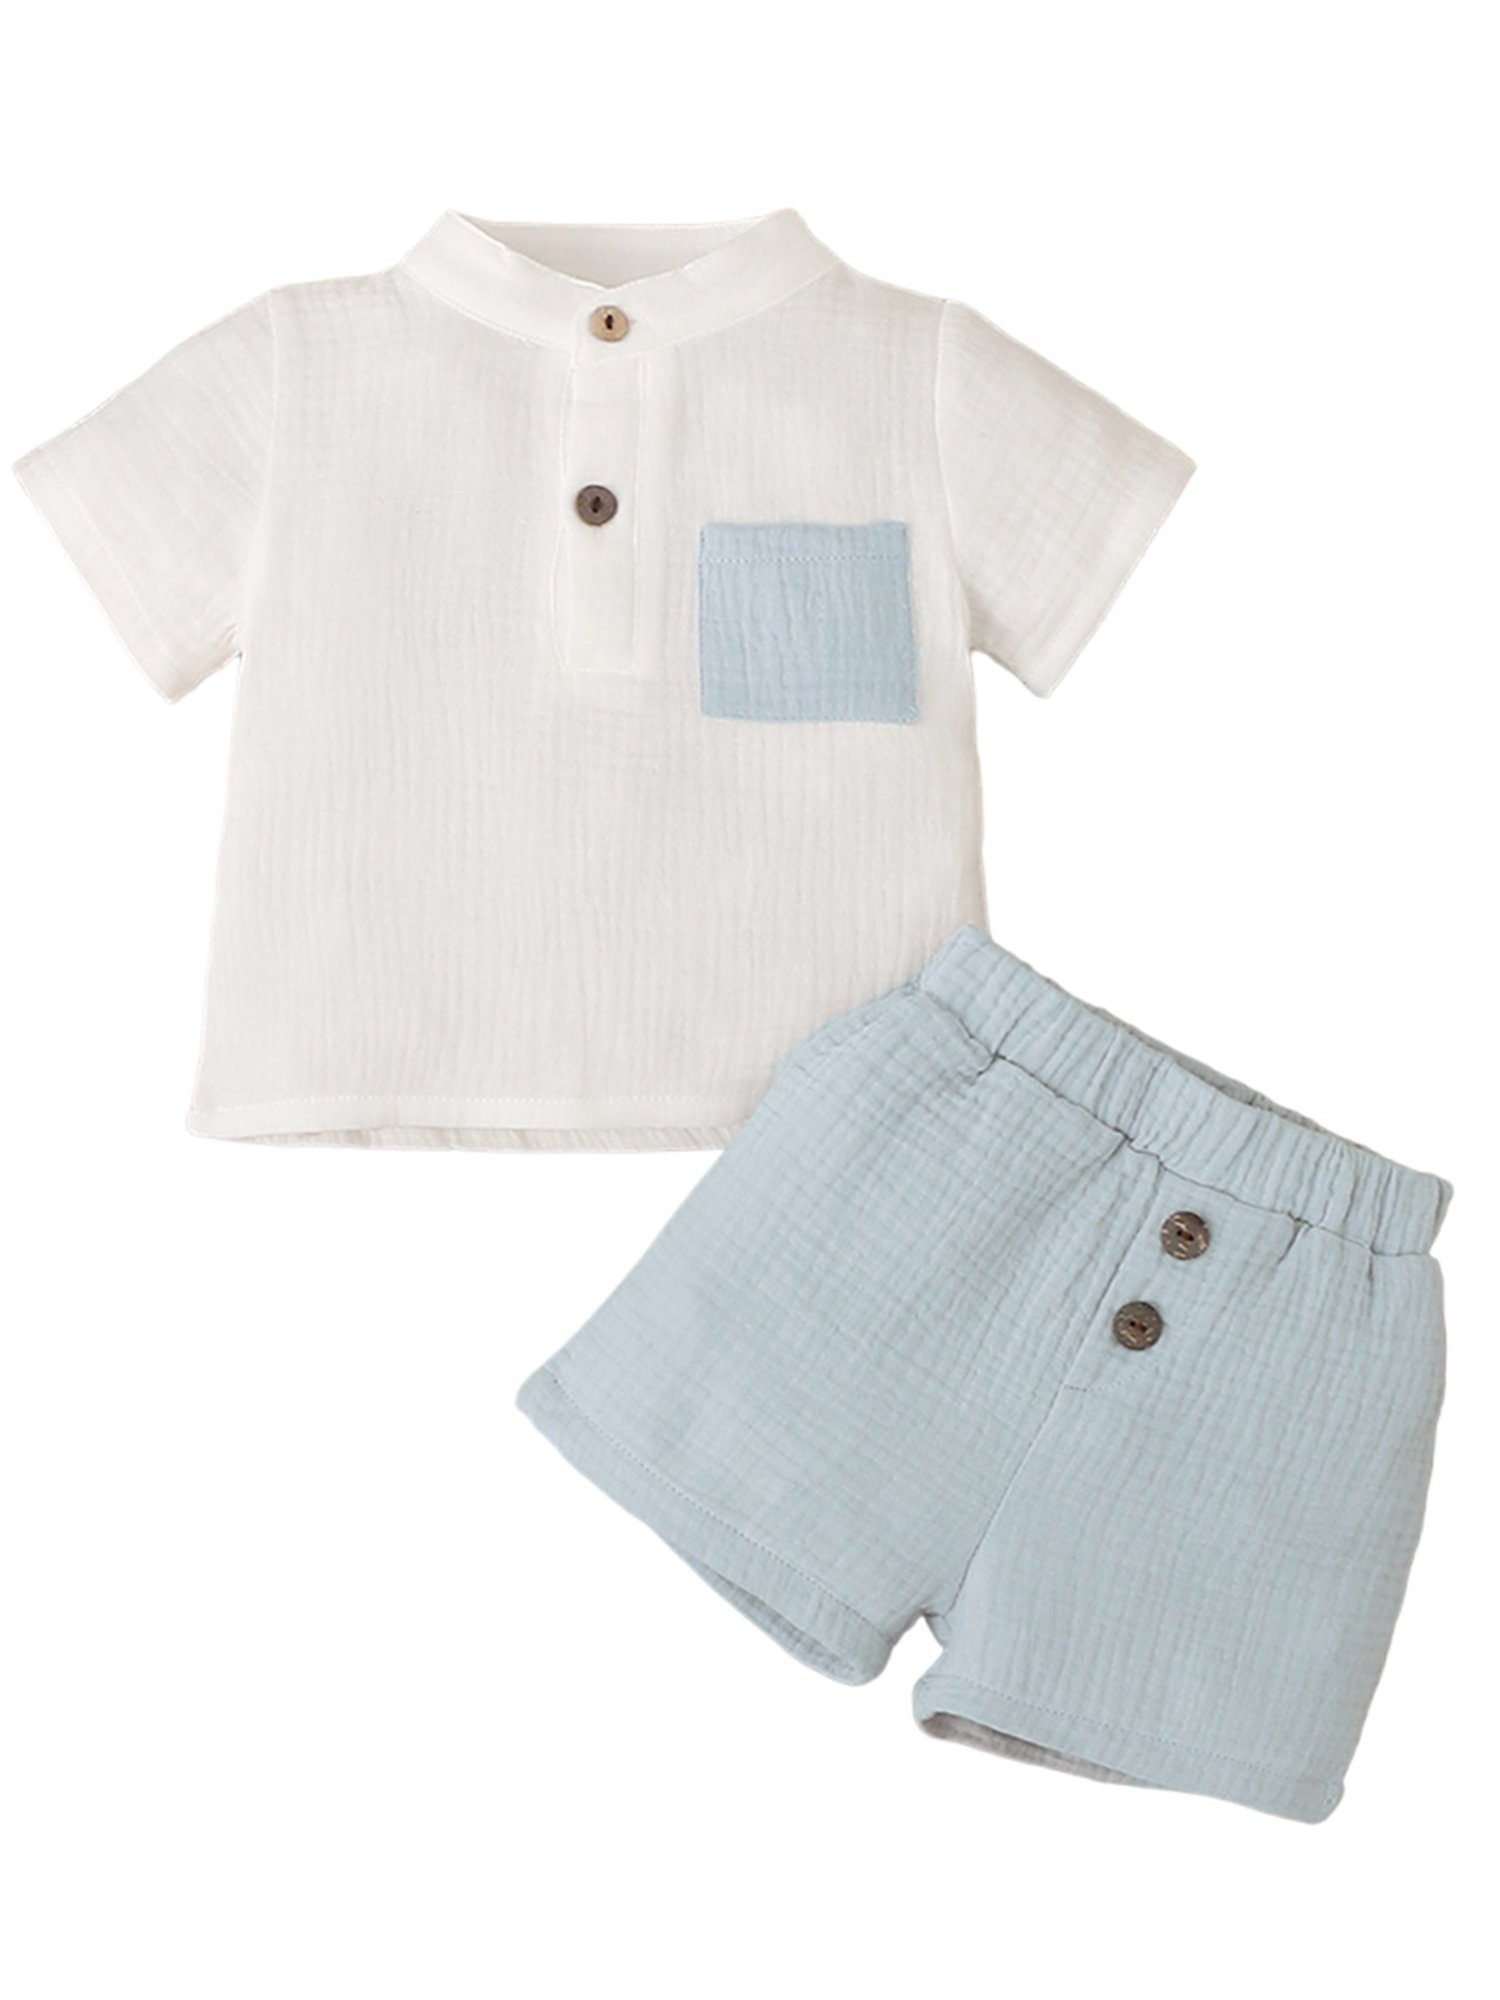 LAPA Shirt & Shorts 2-teiliger Freizeitanzug in Kontrastfarben für Baby Jungen Baumwoll-Softanzug